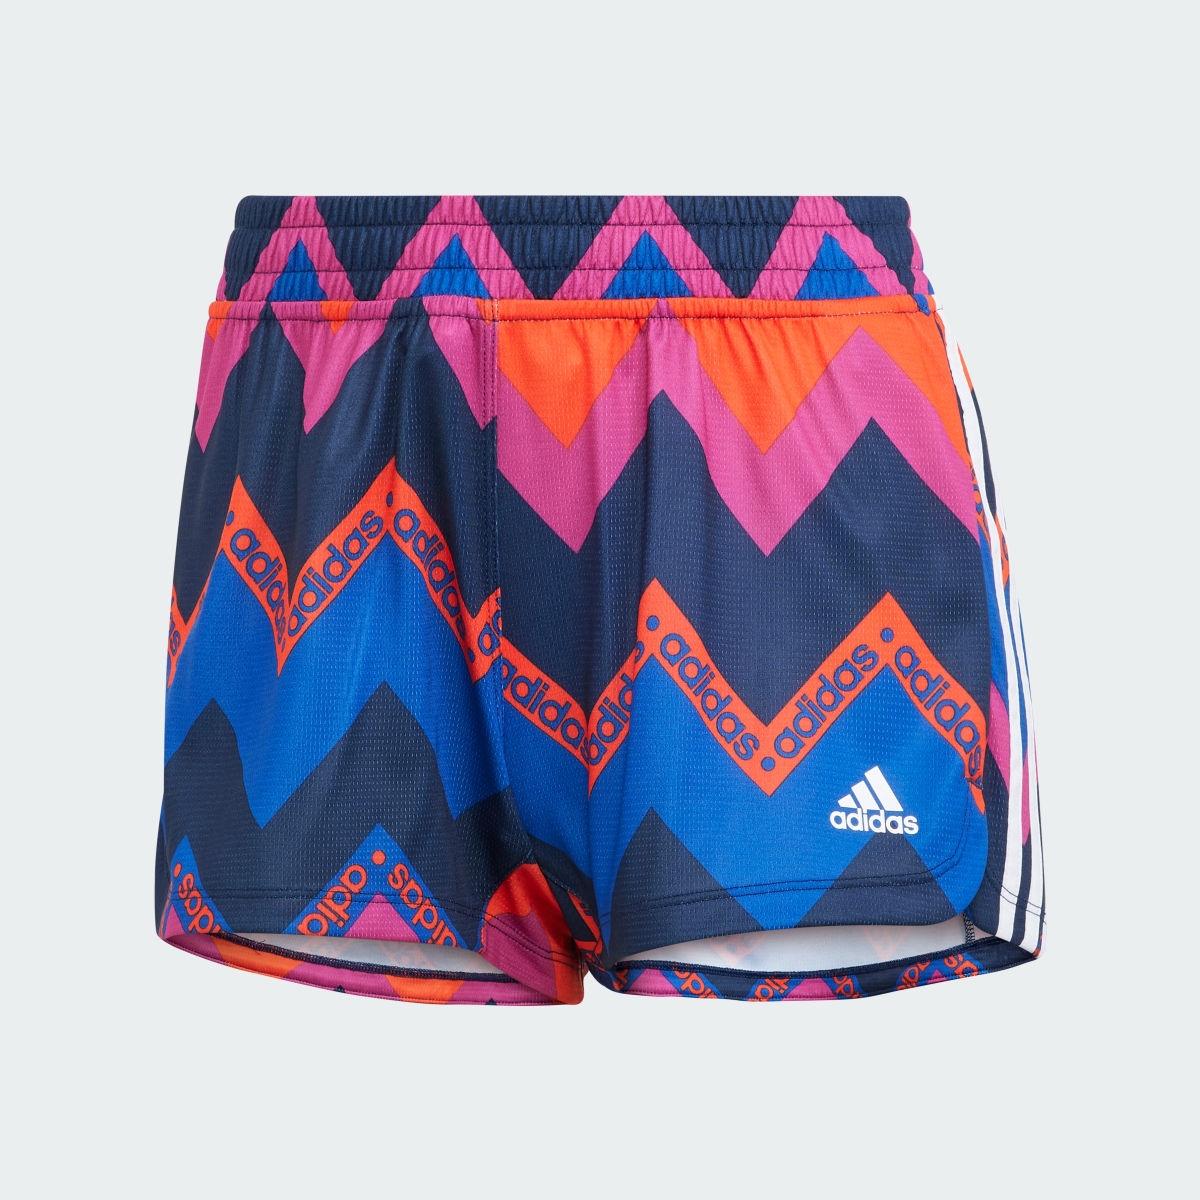 Adidas x FARM Rio Pacer Shorts. 4